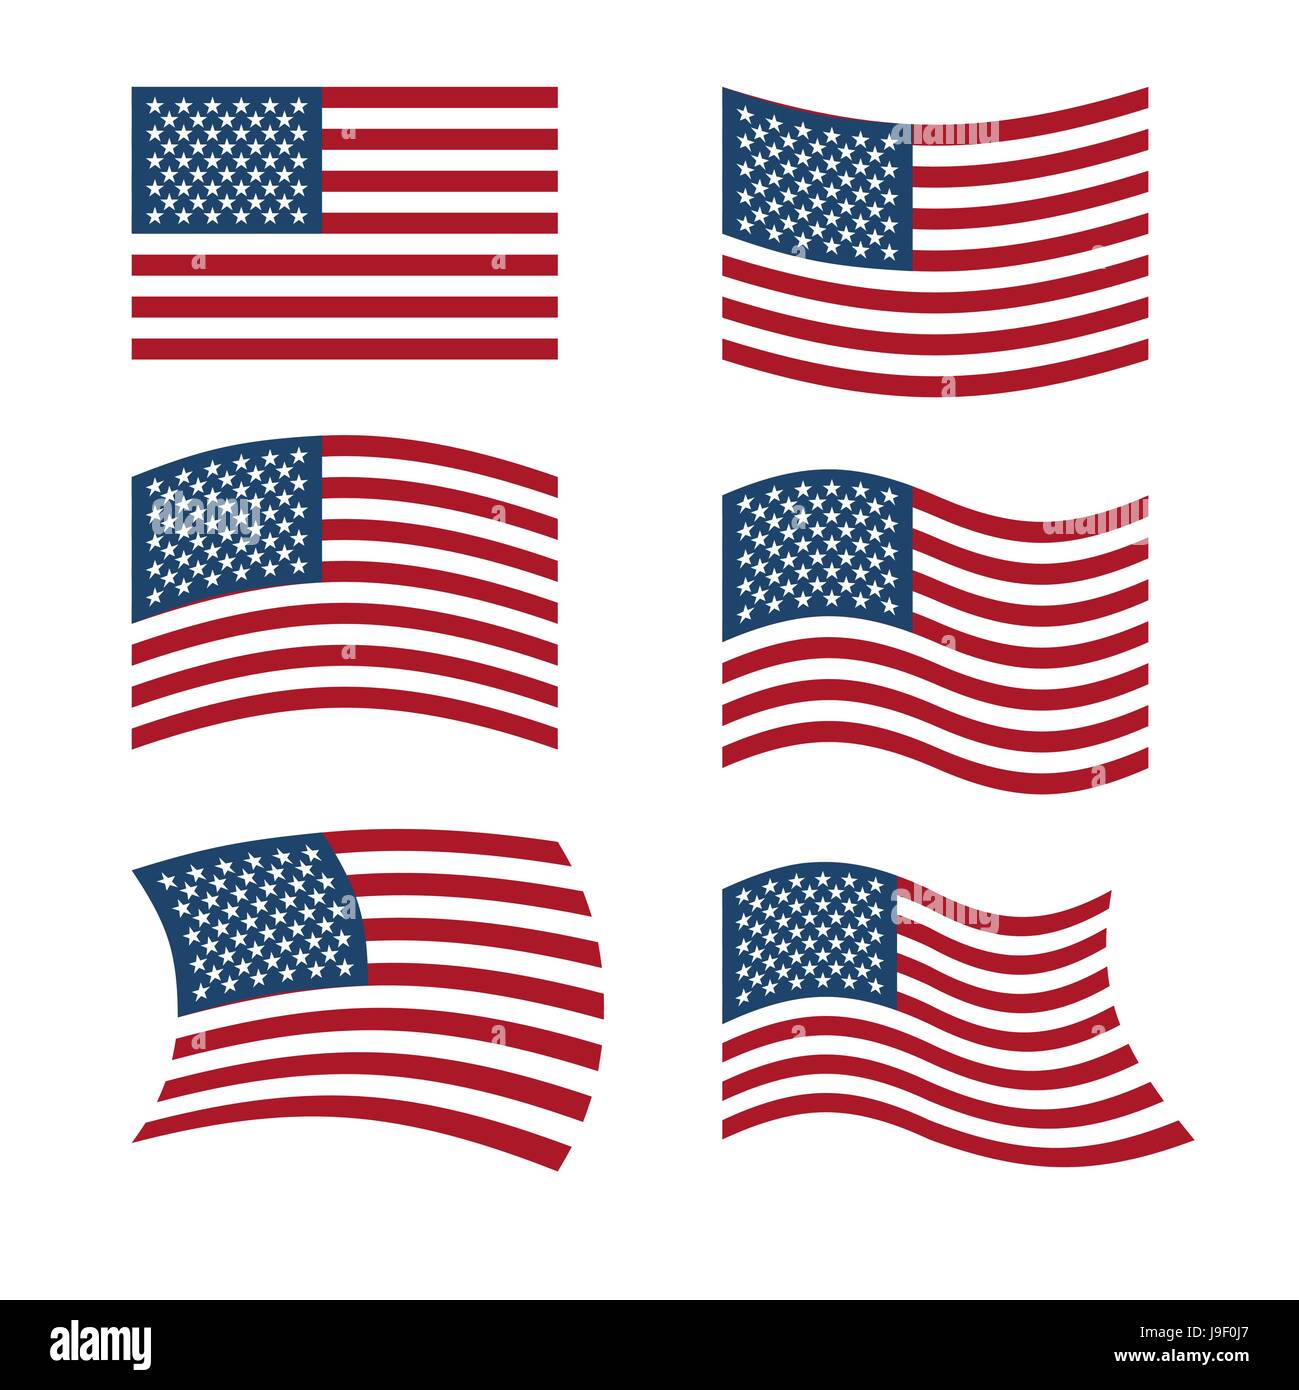 Flagge der USA. Satz von Flags of America in verschiedenen Formen. Amerikanische Flagge auf weißem Hintergrund. Sich entwickelnde Flagge. Nationales Symbol der Vereinigten Staaten Stock Vektor